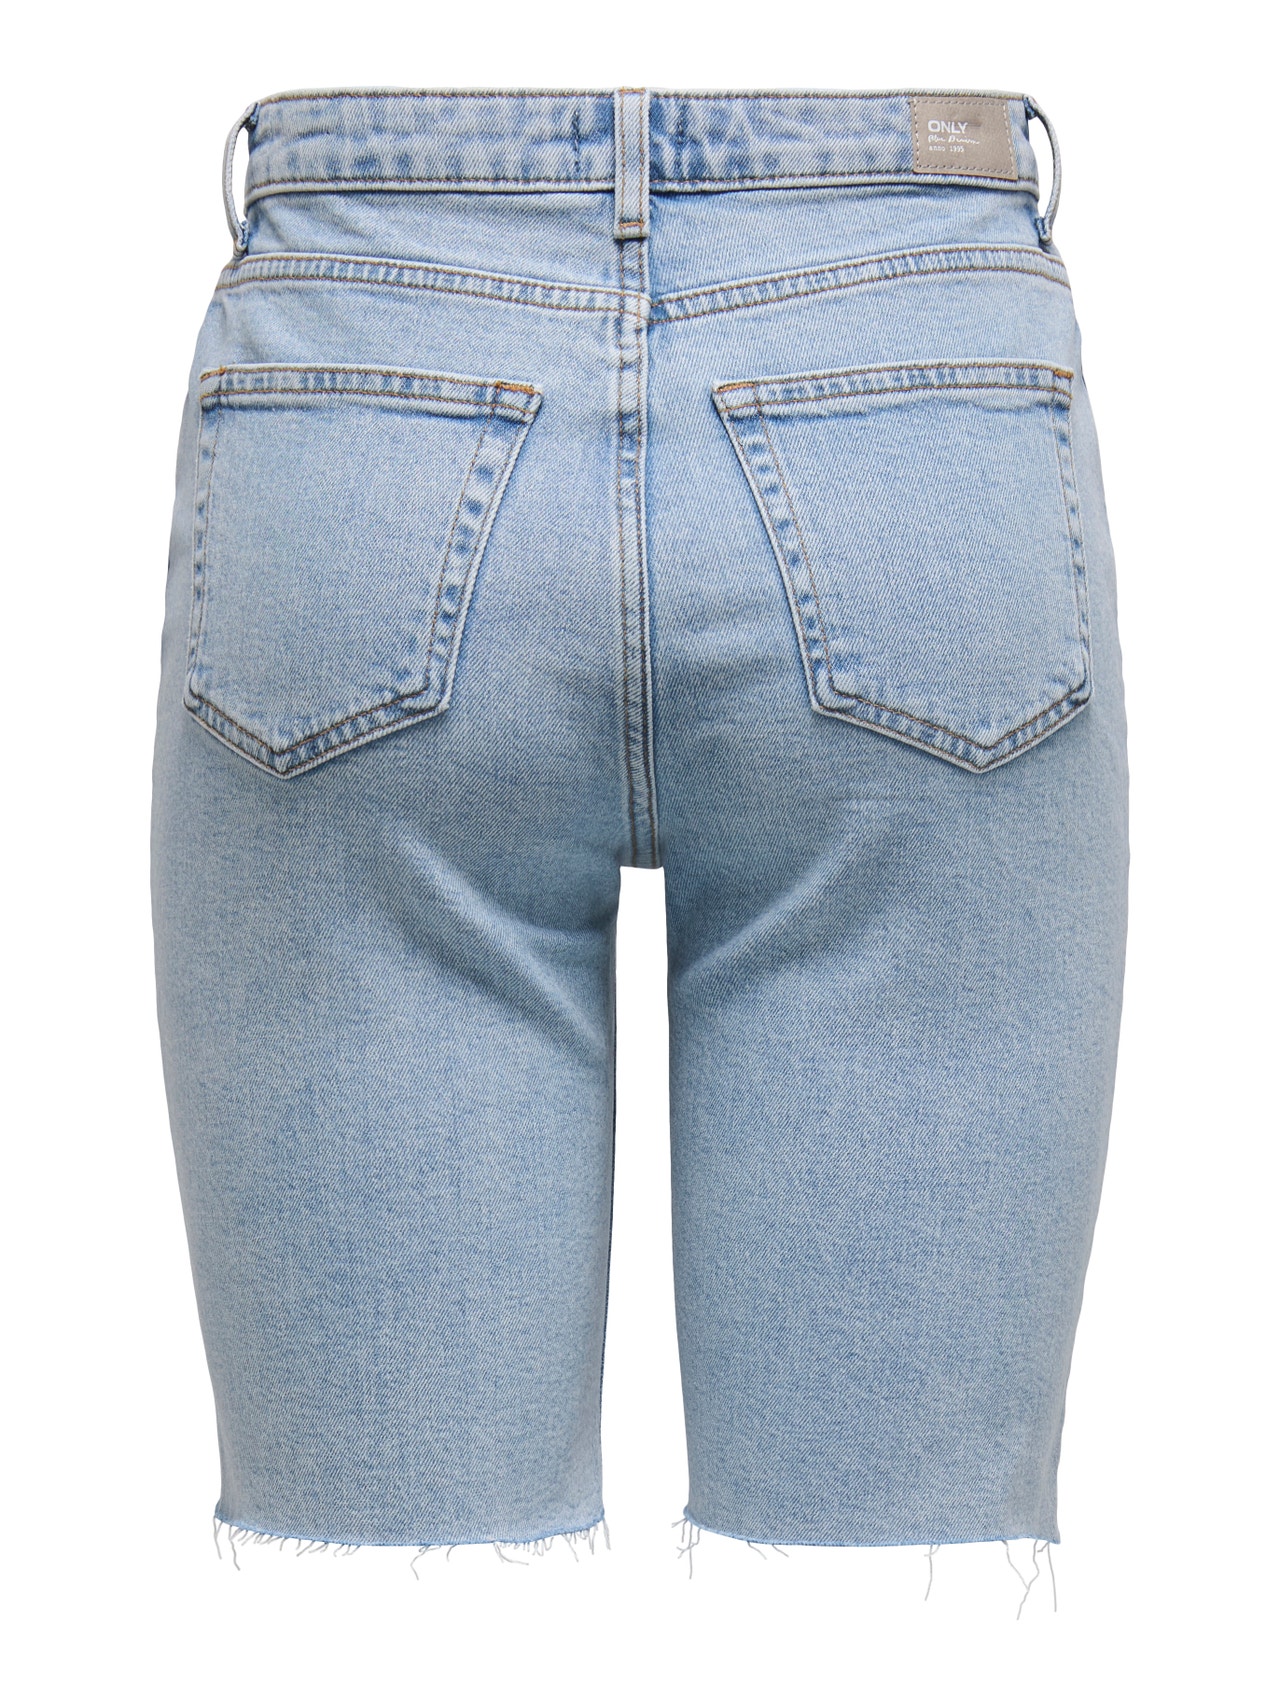 ONLY Straight fit High waist Shorts -Light Blue Denim - 15311259